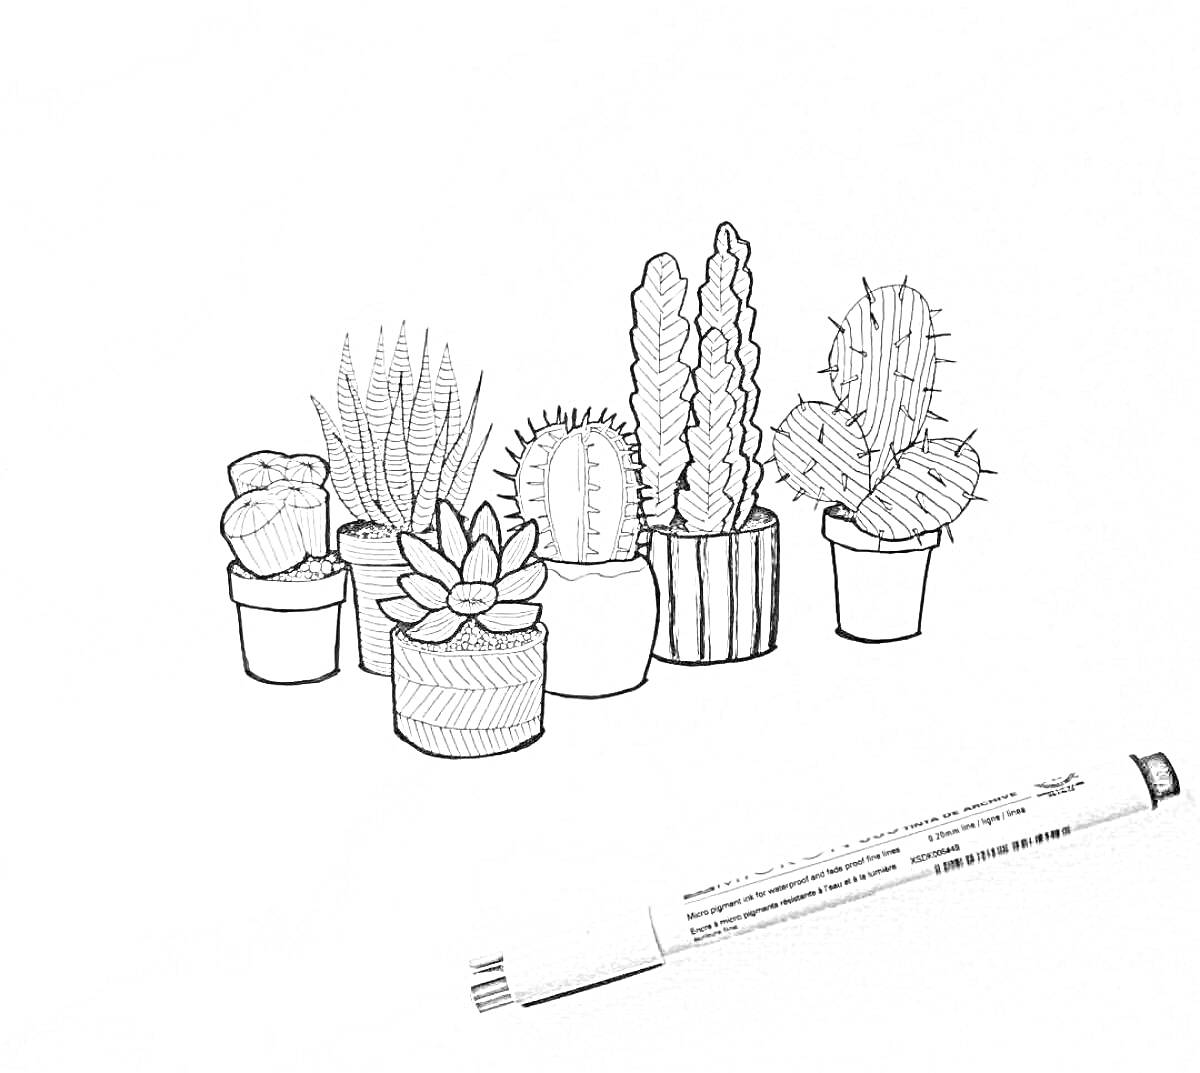 Раскраска с изображением шести горшков с кактусами и суккулентами на белом фоне с черным маркером в правом нижнем углу